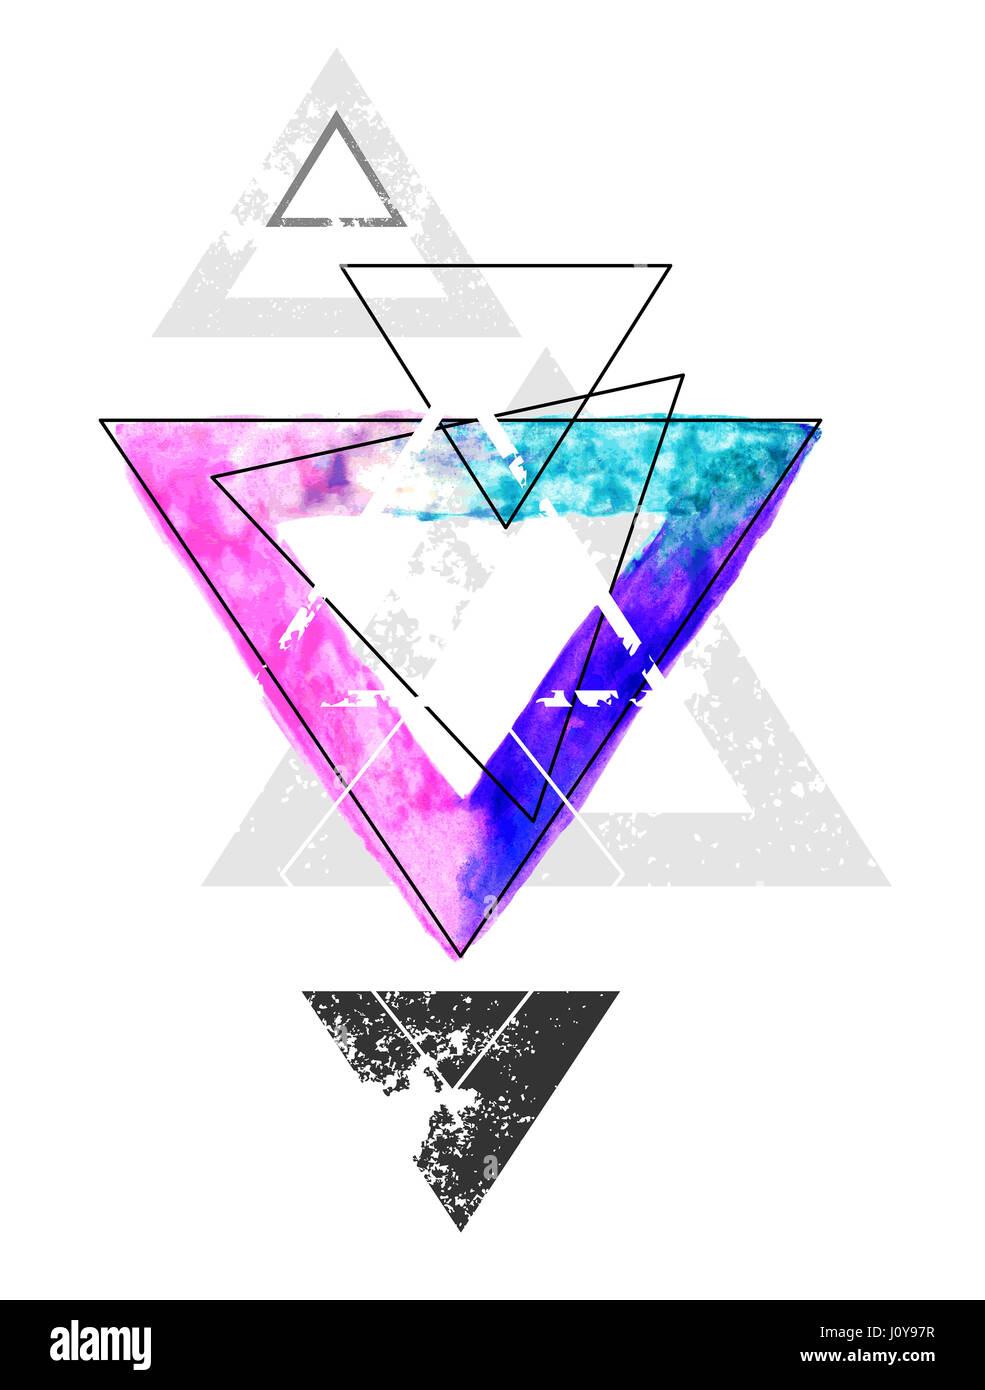 Composizione di forme geometriche con un triangolo dipinto con colori luminosi acquerelli di vernice su uno sfondo bianco. Disegno ad acquerello. Lo stile di tatuaggio. Foto Stock